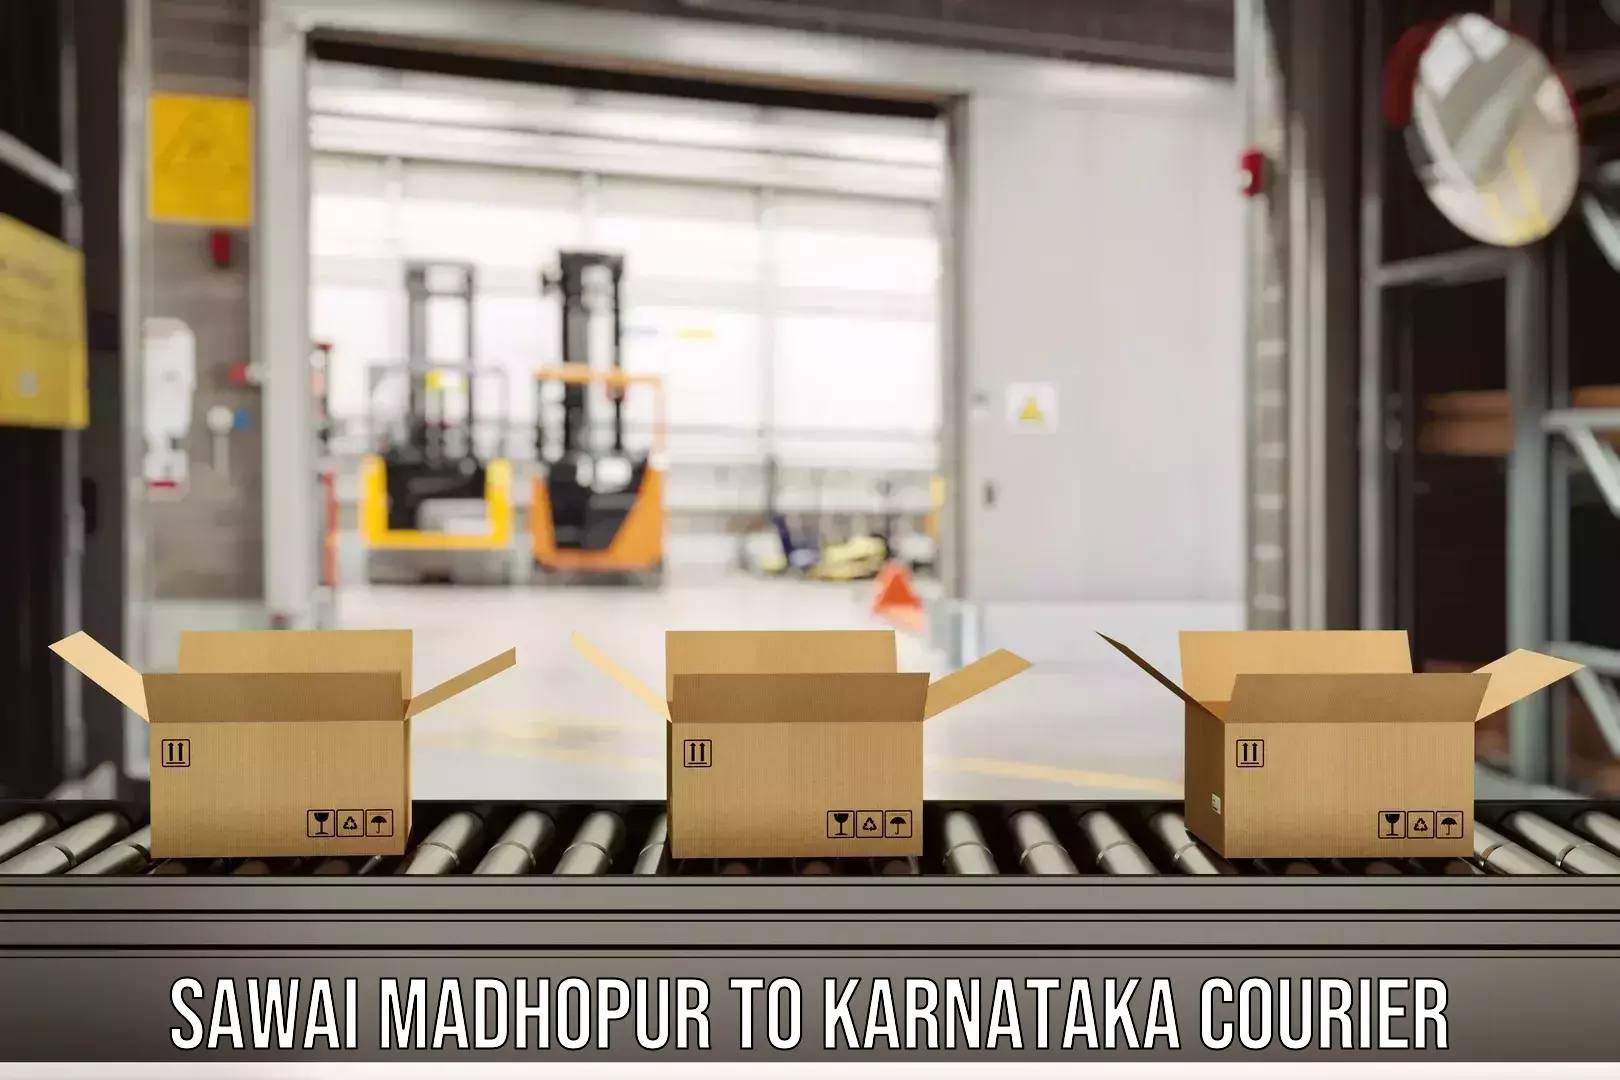 Digital courier platforms Sawai Madhopur to Ramdurg